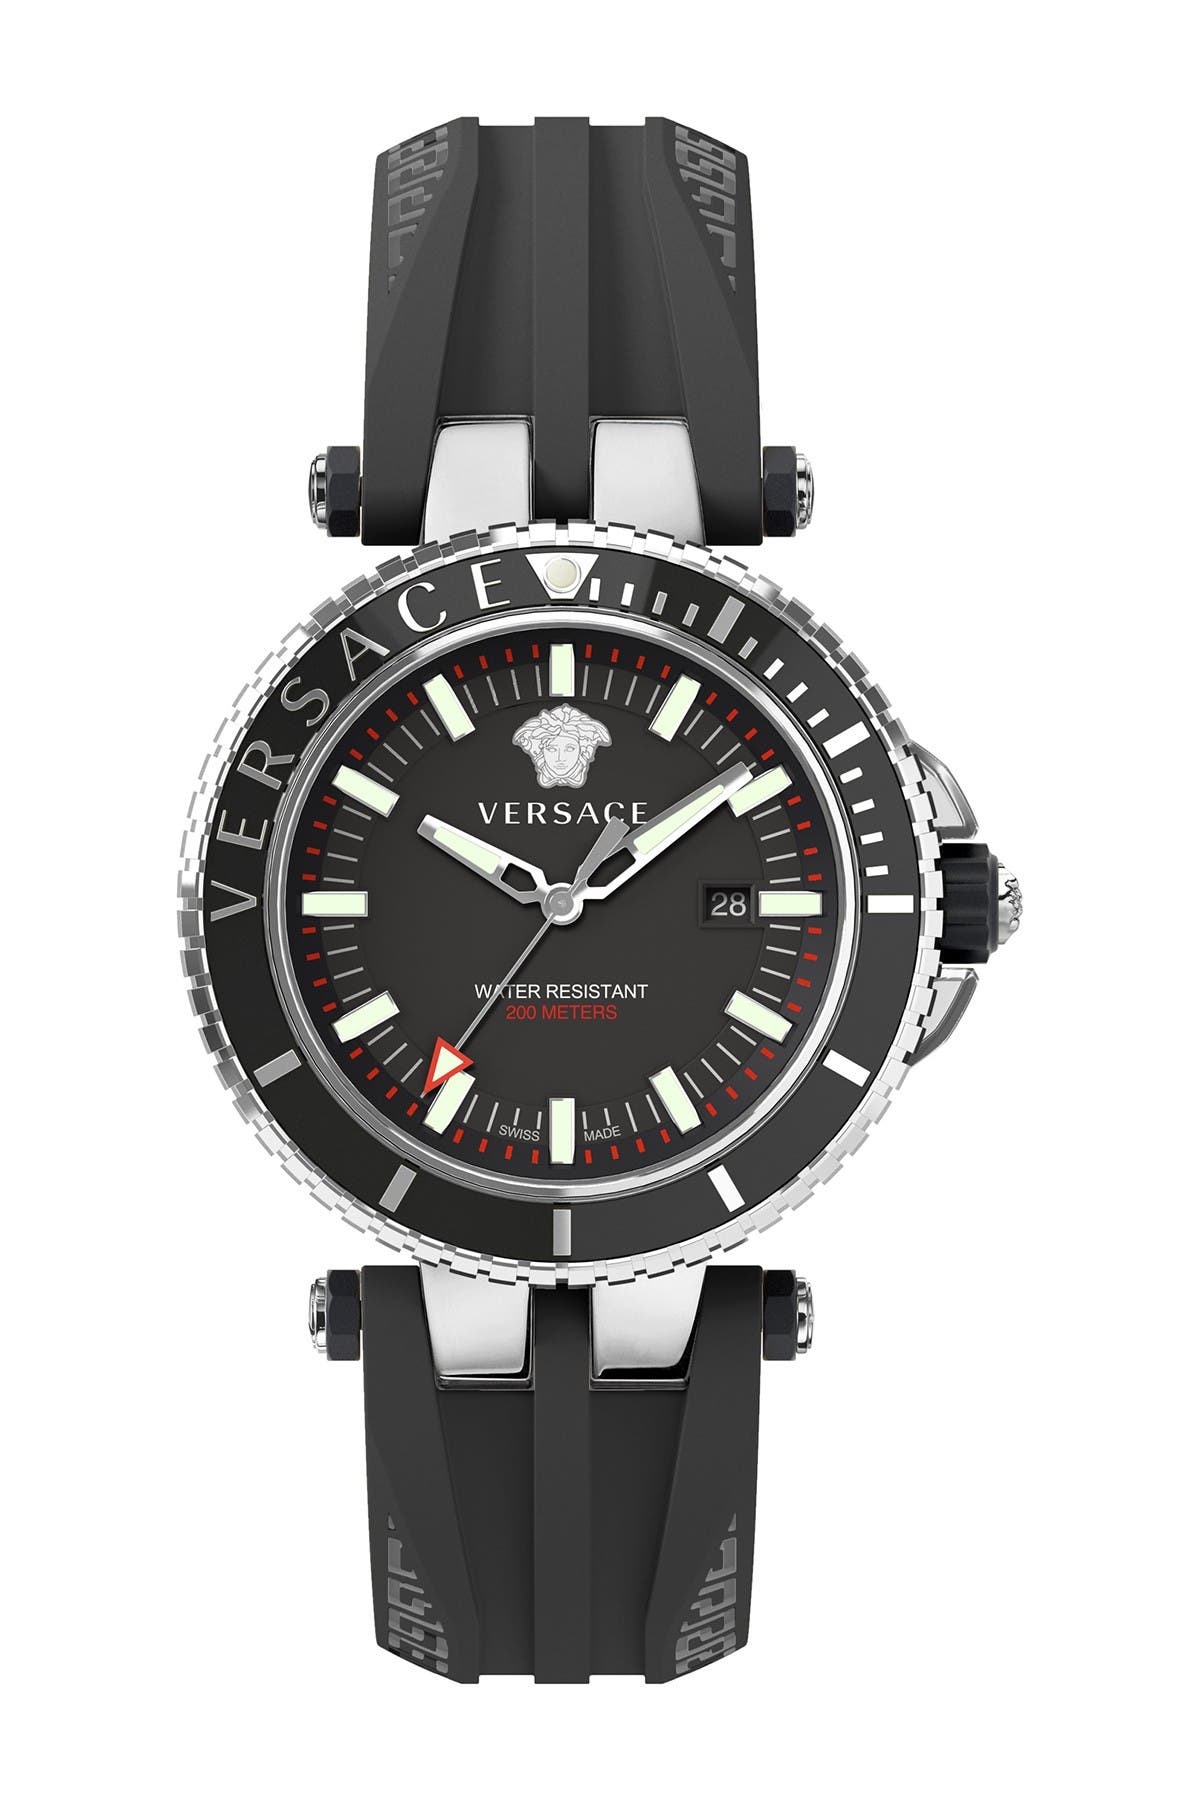 versace divers watch